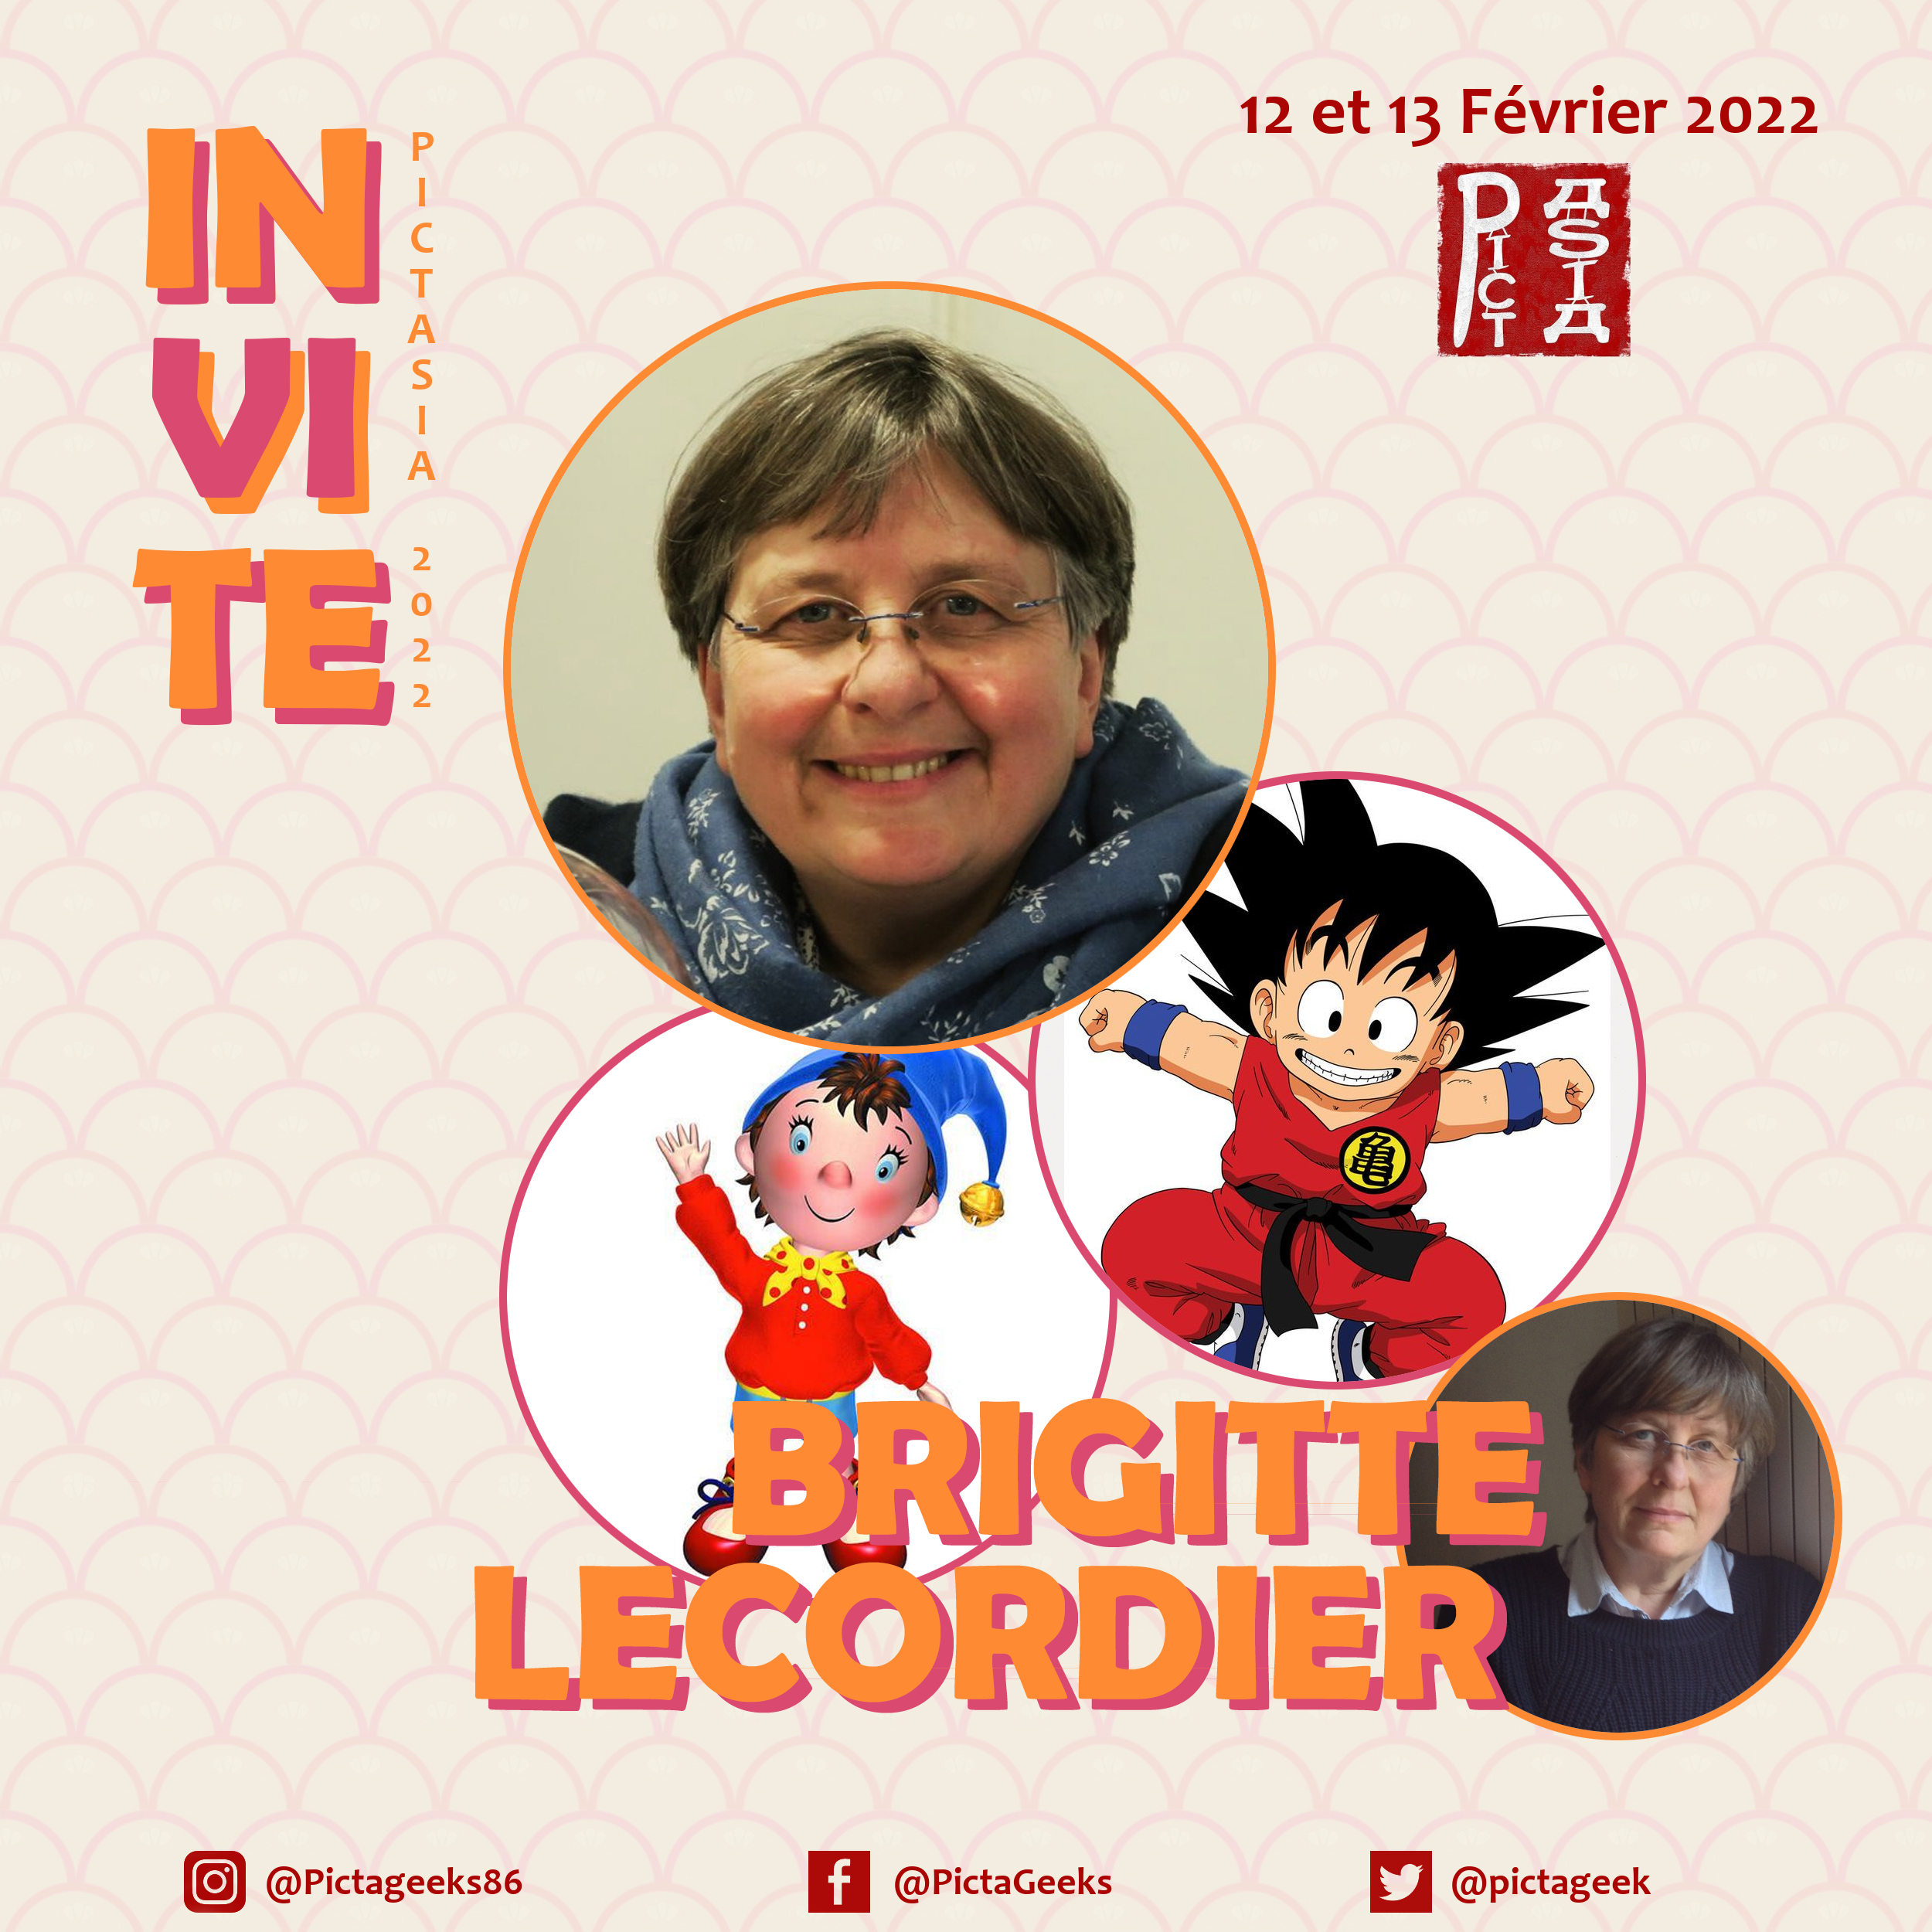 Brigitte Lecordier comédienne doublage, DBZ, DB DragonBall, Sangoku, Pictasia, pictageek, manga, japon, Poitiers